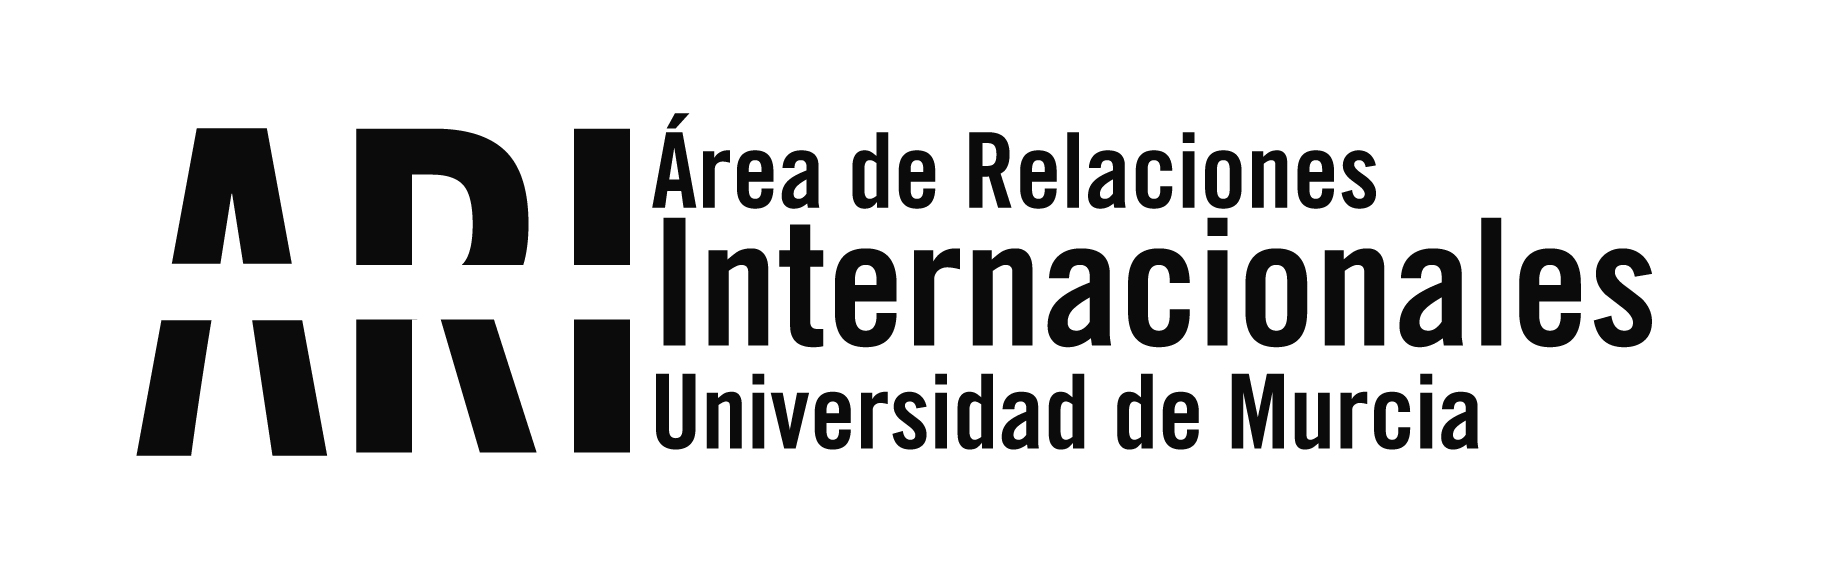 Bienvenida Universidad de Murcia Internacional 2017-18 2 Cuat - Área de Relaciones Internacionales